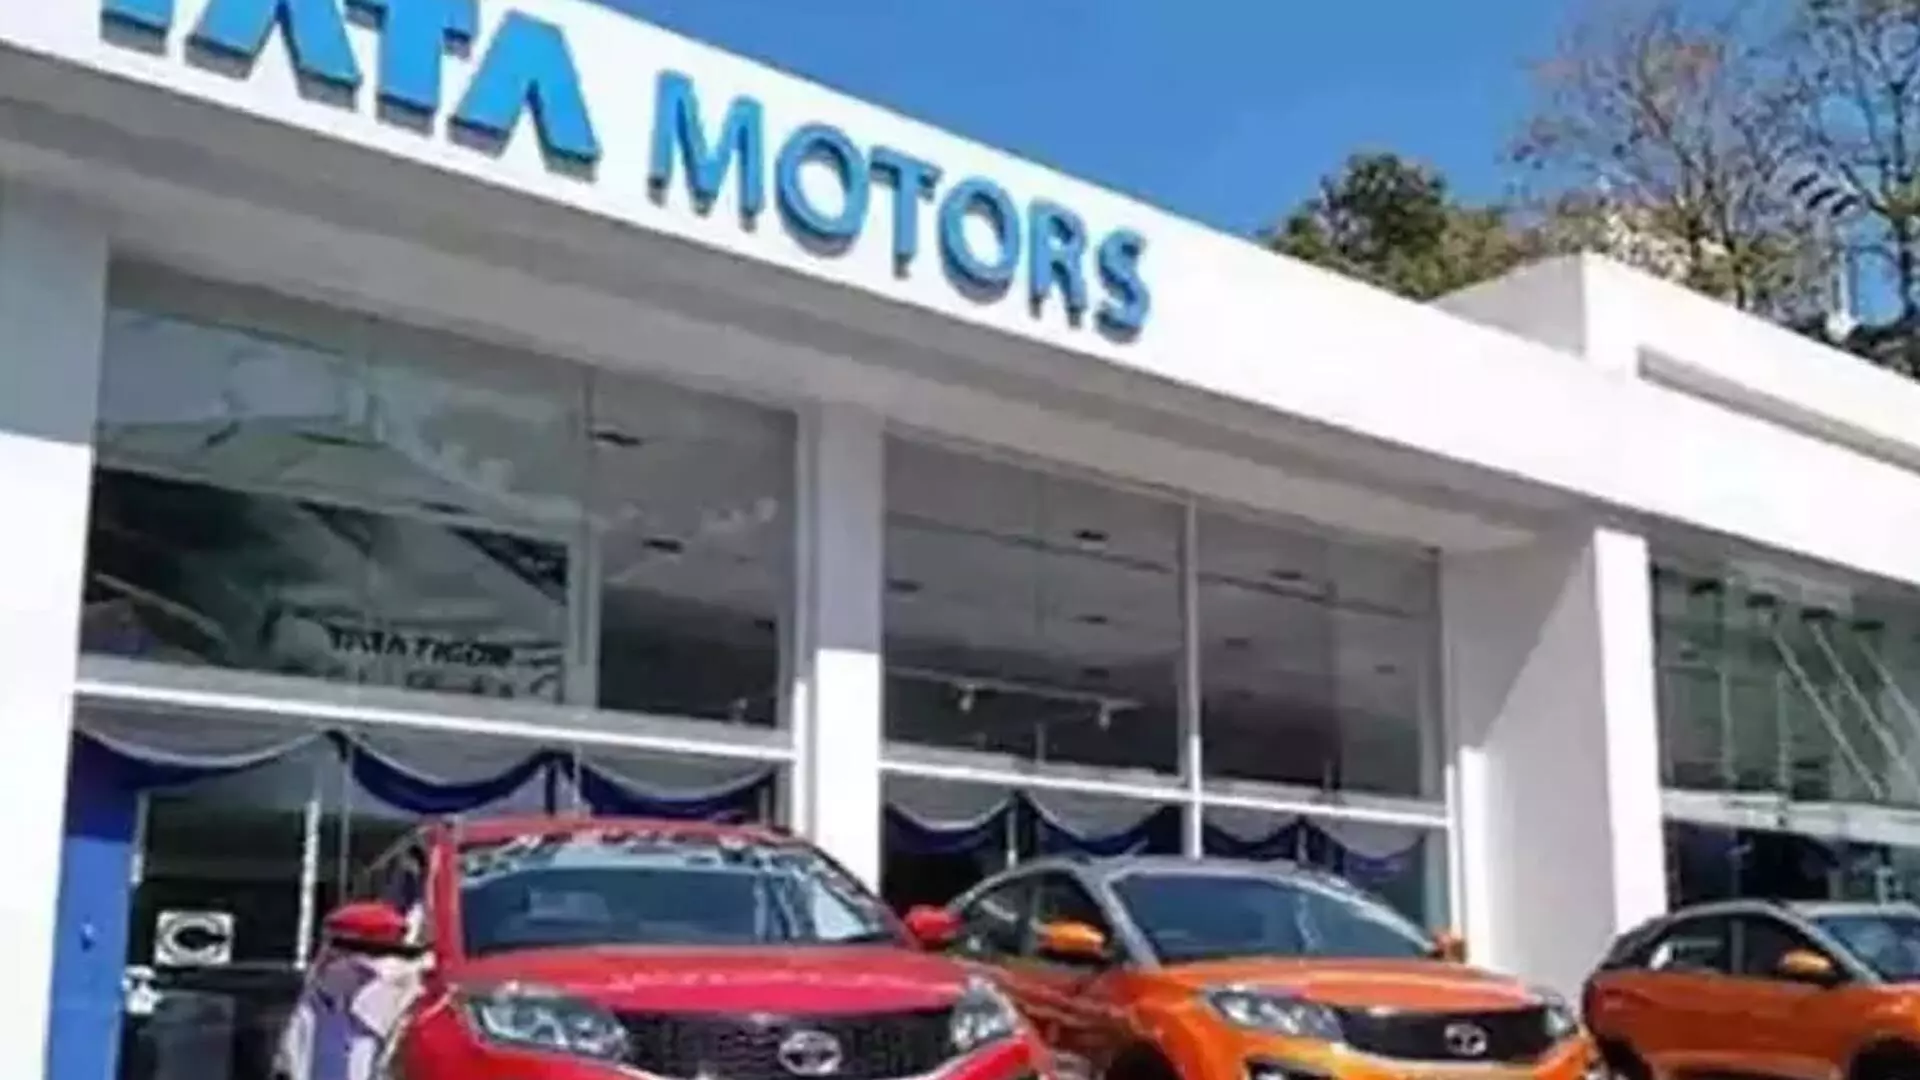 टाटा मोटर्स के शेयरों में 9 फीसदी की गिरावट, मार्केट कैप 29,946.88 करोड़ रुपये घटा